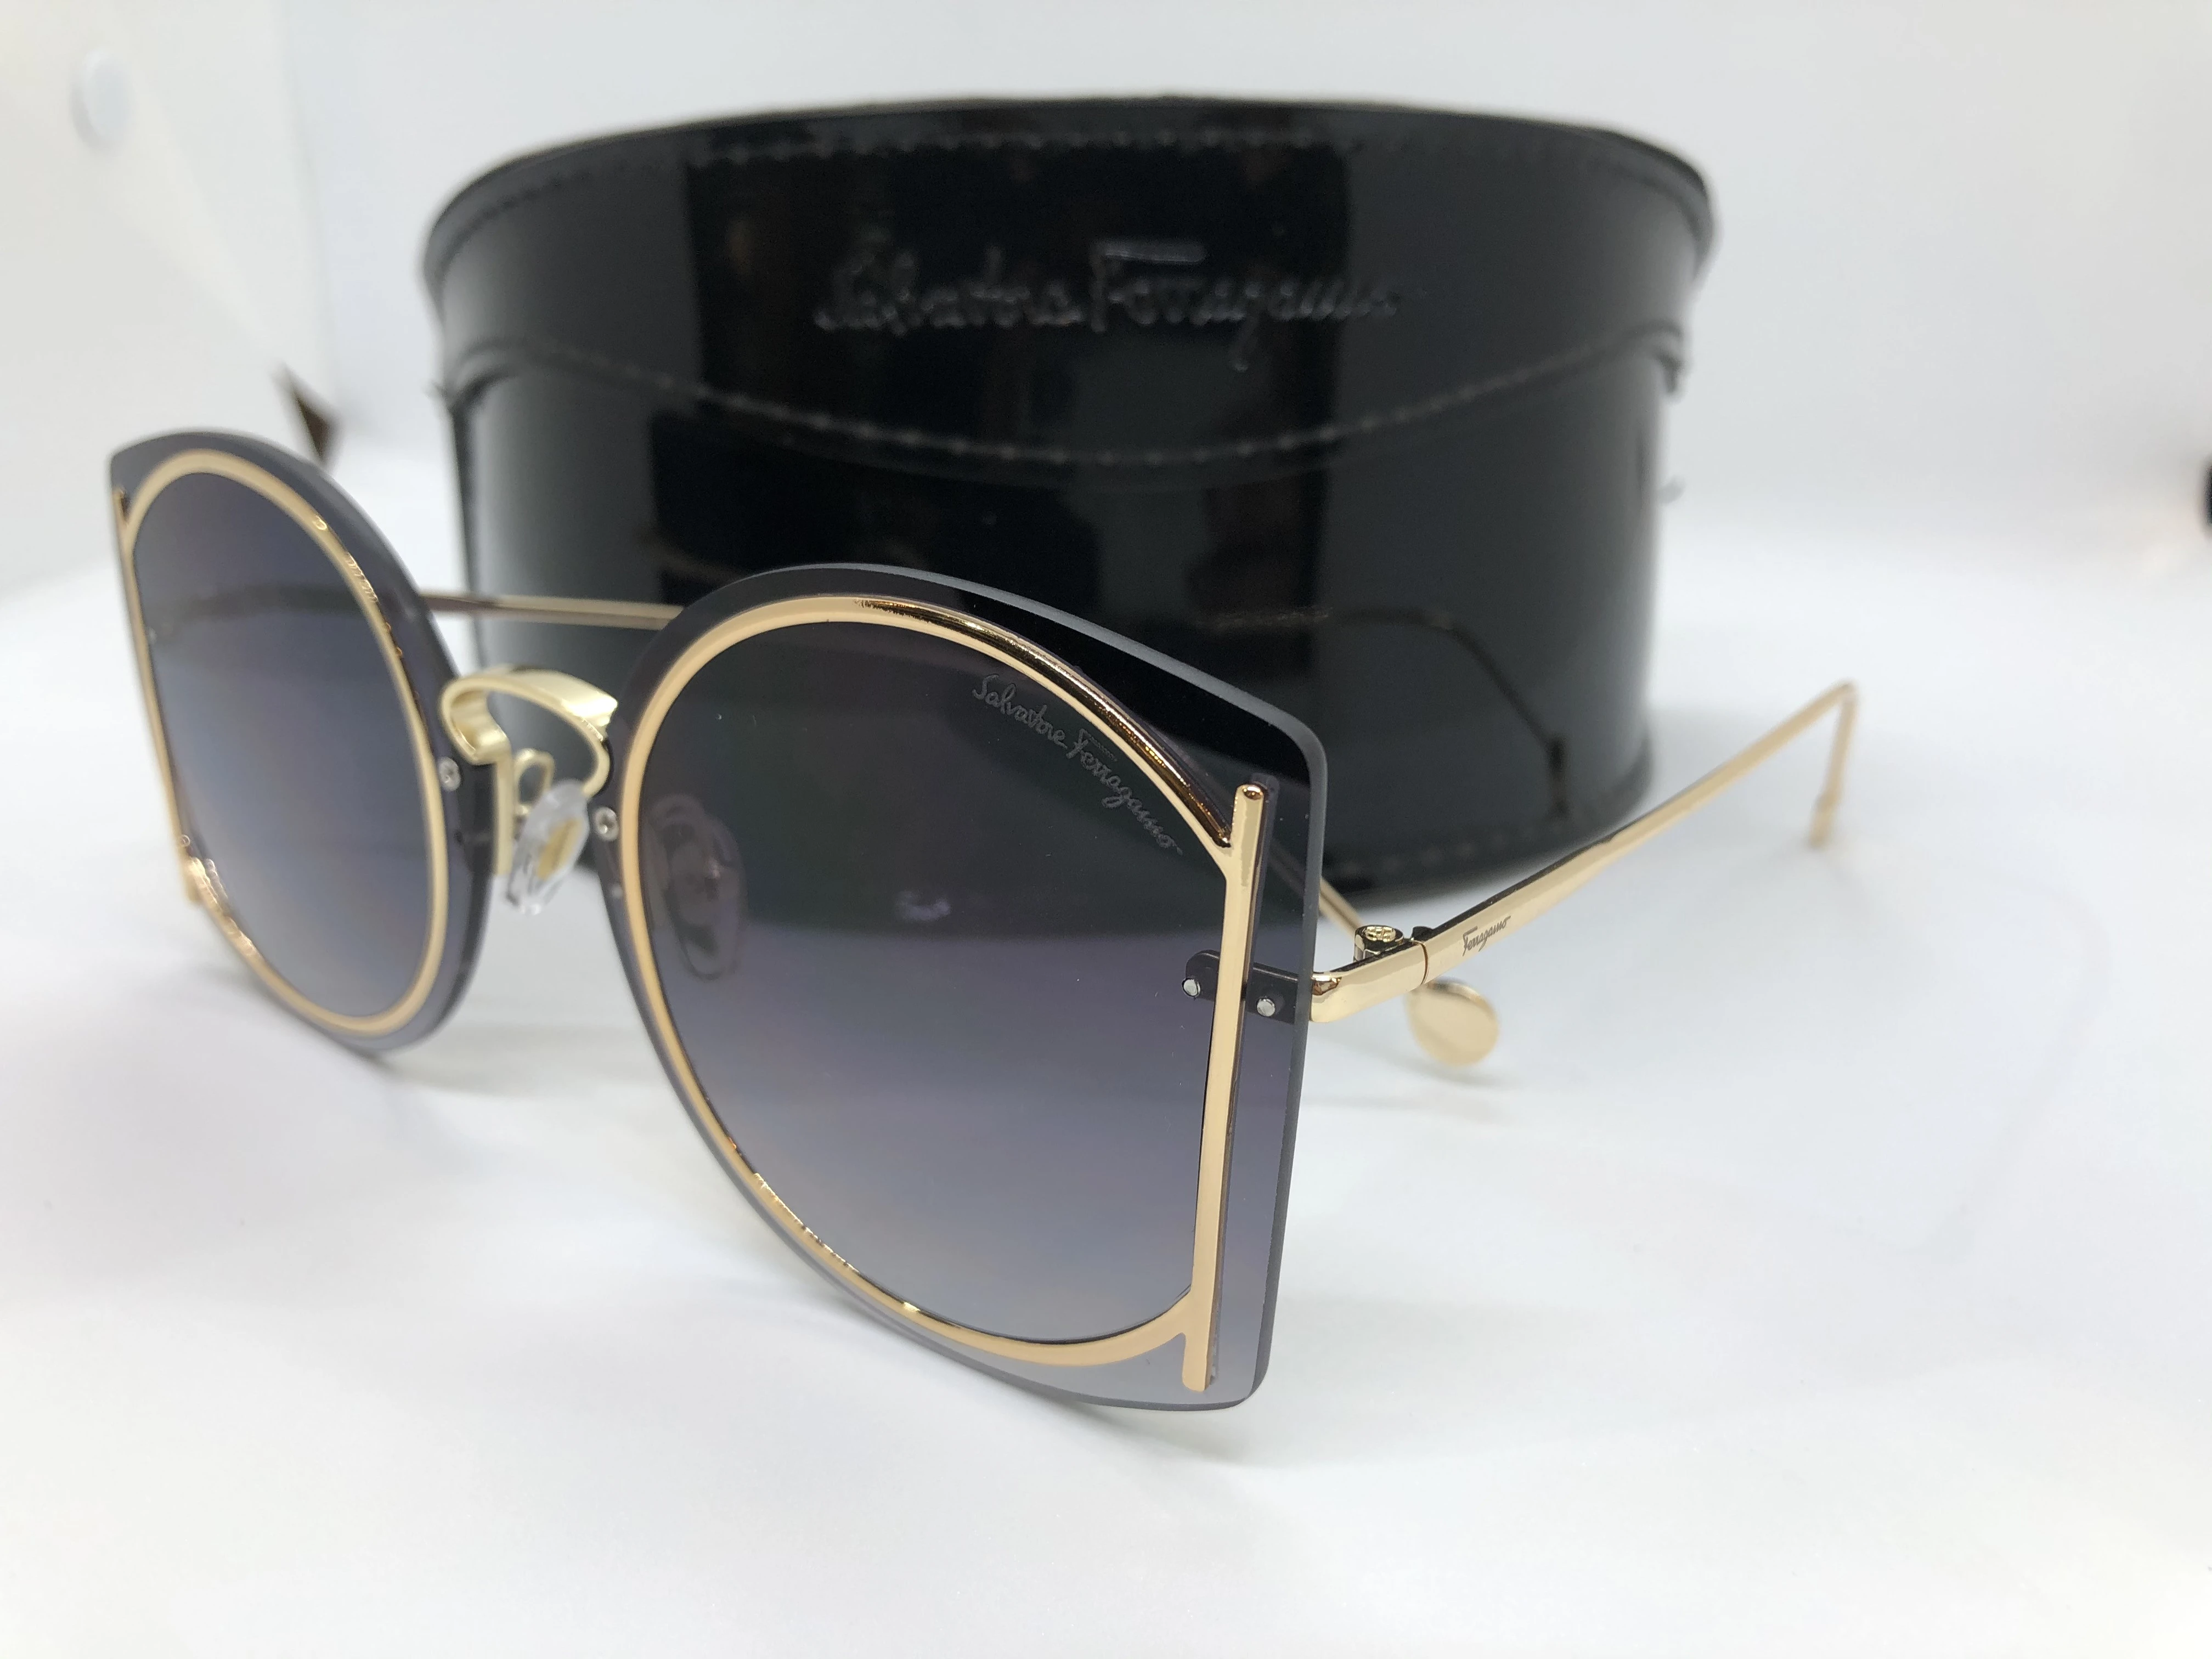 نظارة شمسية - من سلفاتوري فيراغامو -بدون اطار - وعدسات كحلي شفاف - وزراع ذهبي معدن - اطار منفصل للعدسات معدن ذهبي - حريمي